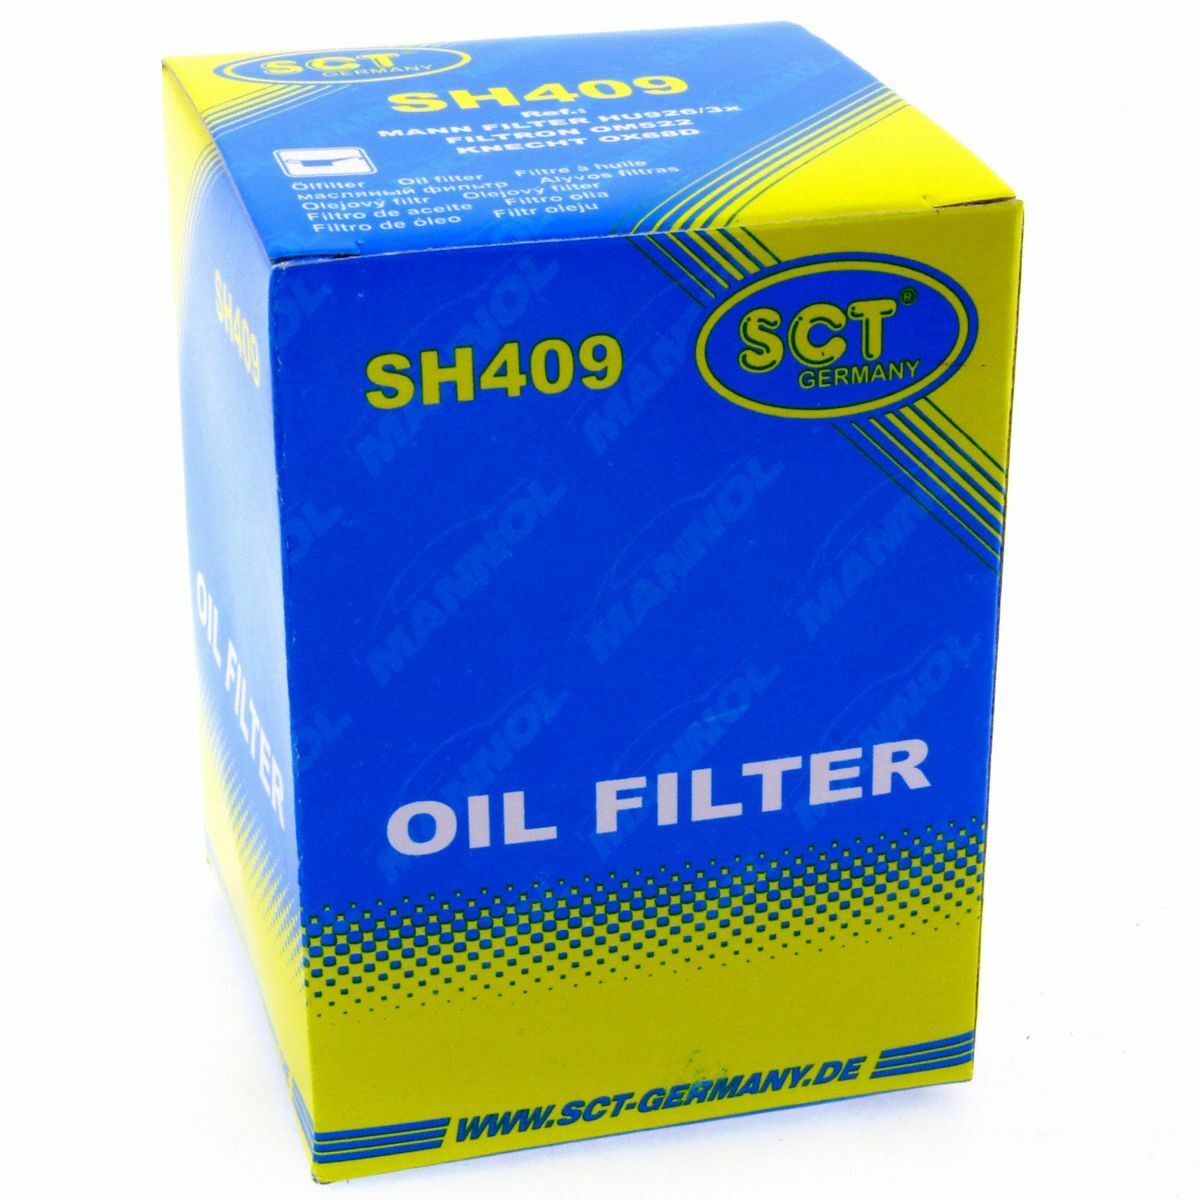 SCT Ölfilter SH 409 P Filter Motorfilter Servicefilter Patronenfilter Dichtung BMW